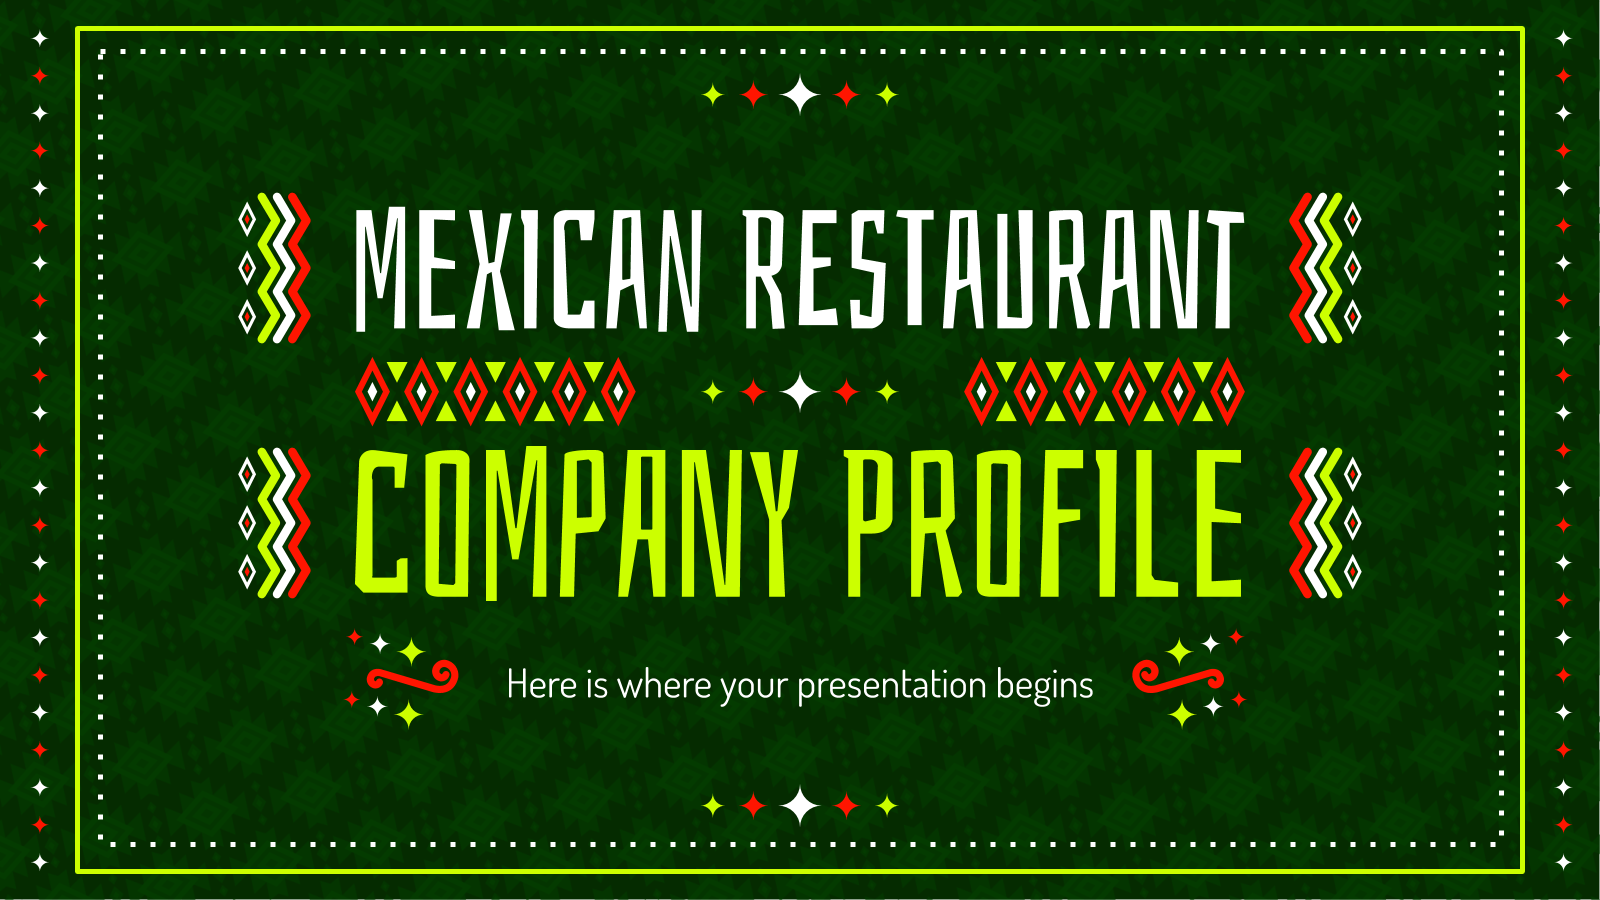 PPT的墨西哥餐厅公司简介